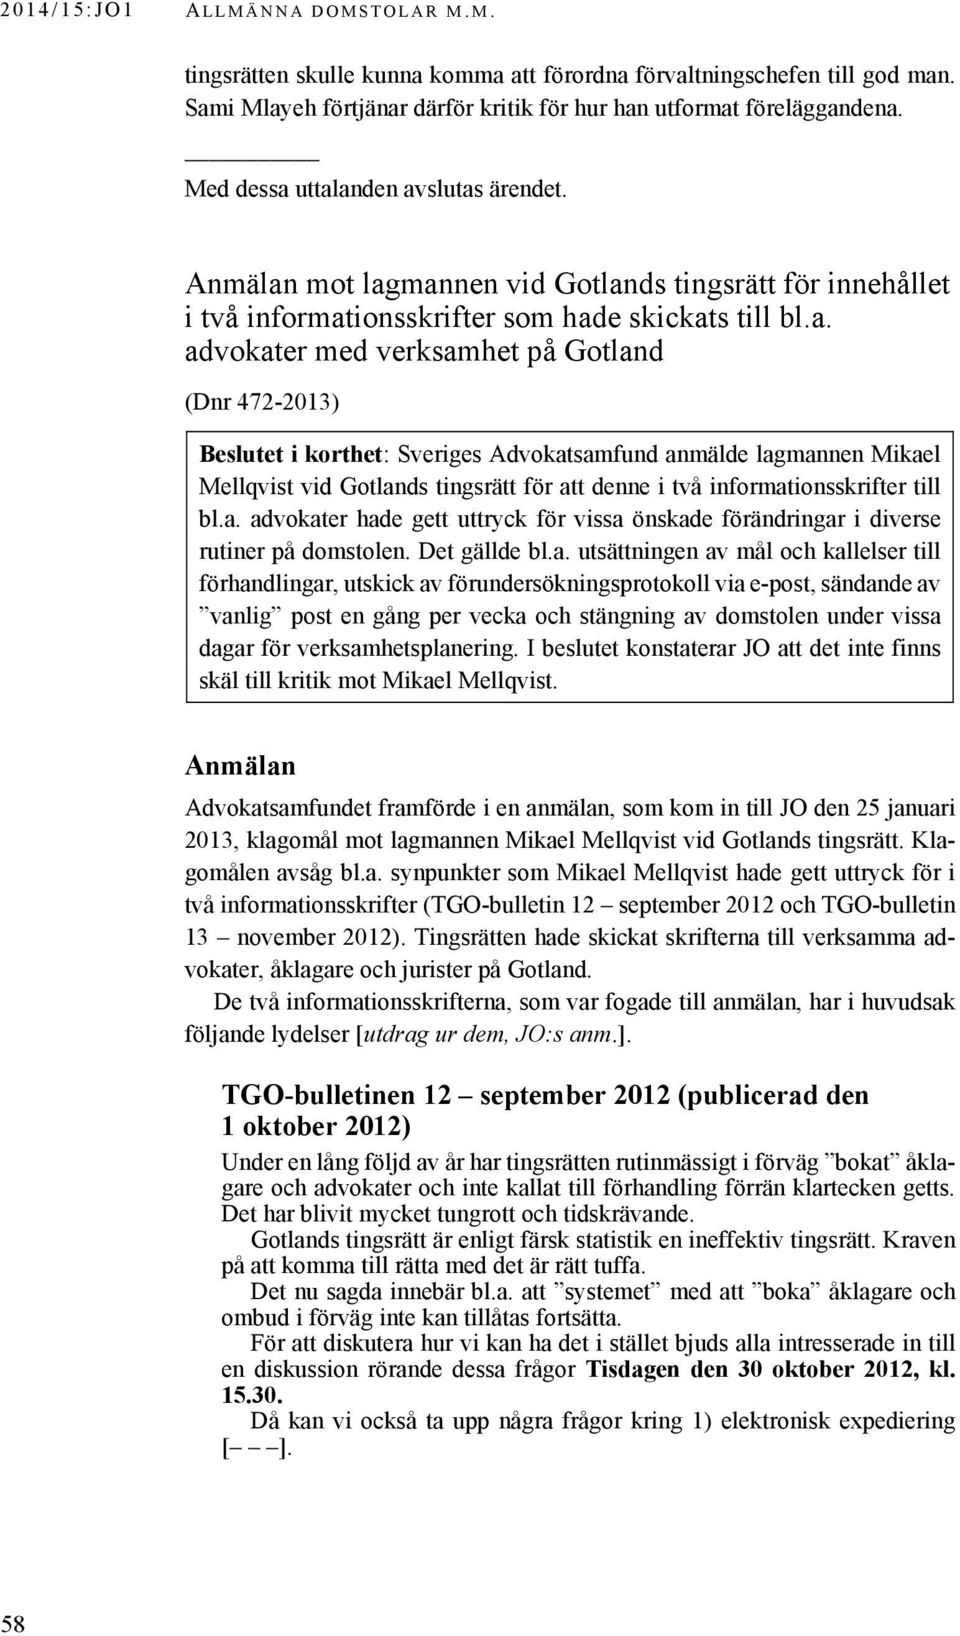 uttalanden avslutas ärendet. Anmälan mot lagmannen vid Gotlands tingsrätt för innehållet i två informationsskrifter som hade skickats till bl.a. advokater med verksamhet på Gotland(472-2013) (Dnr